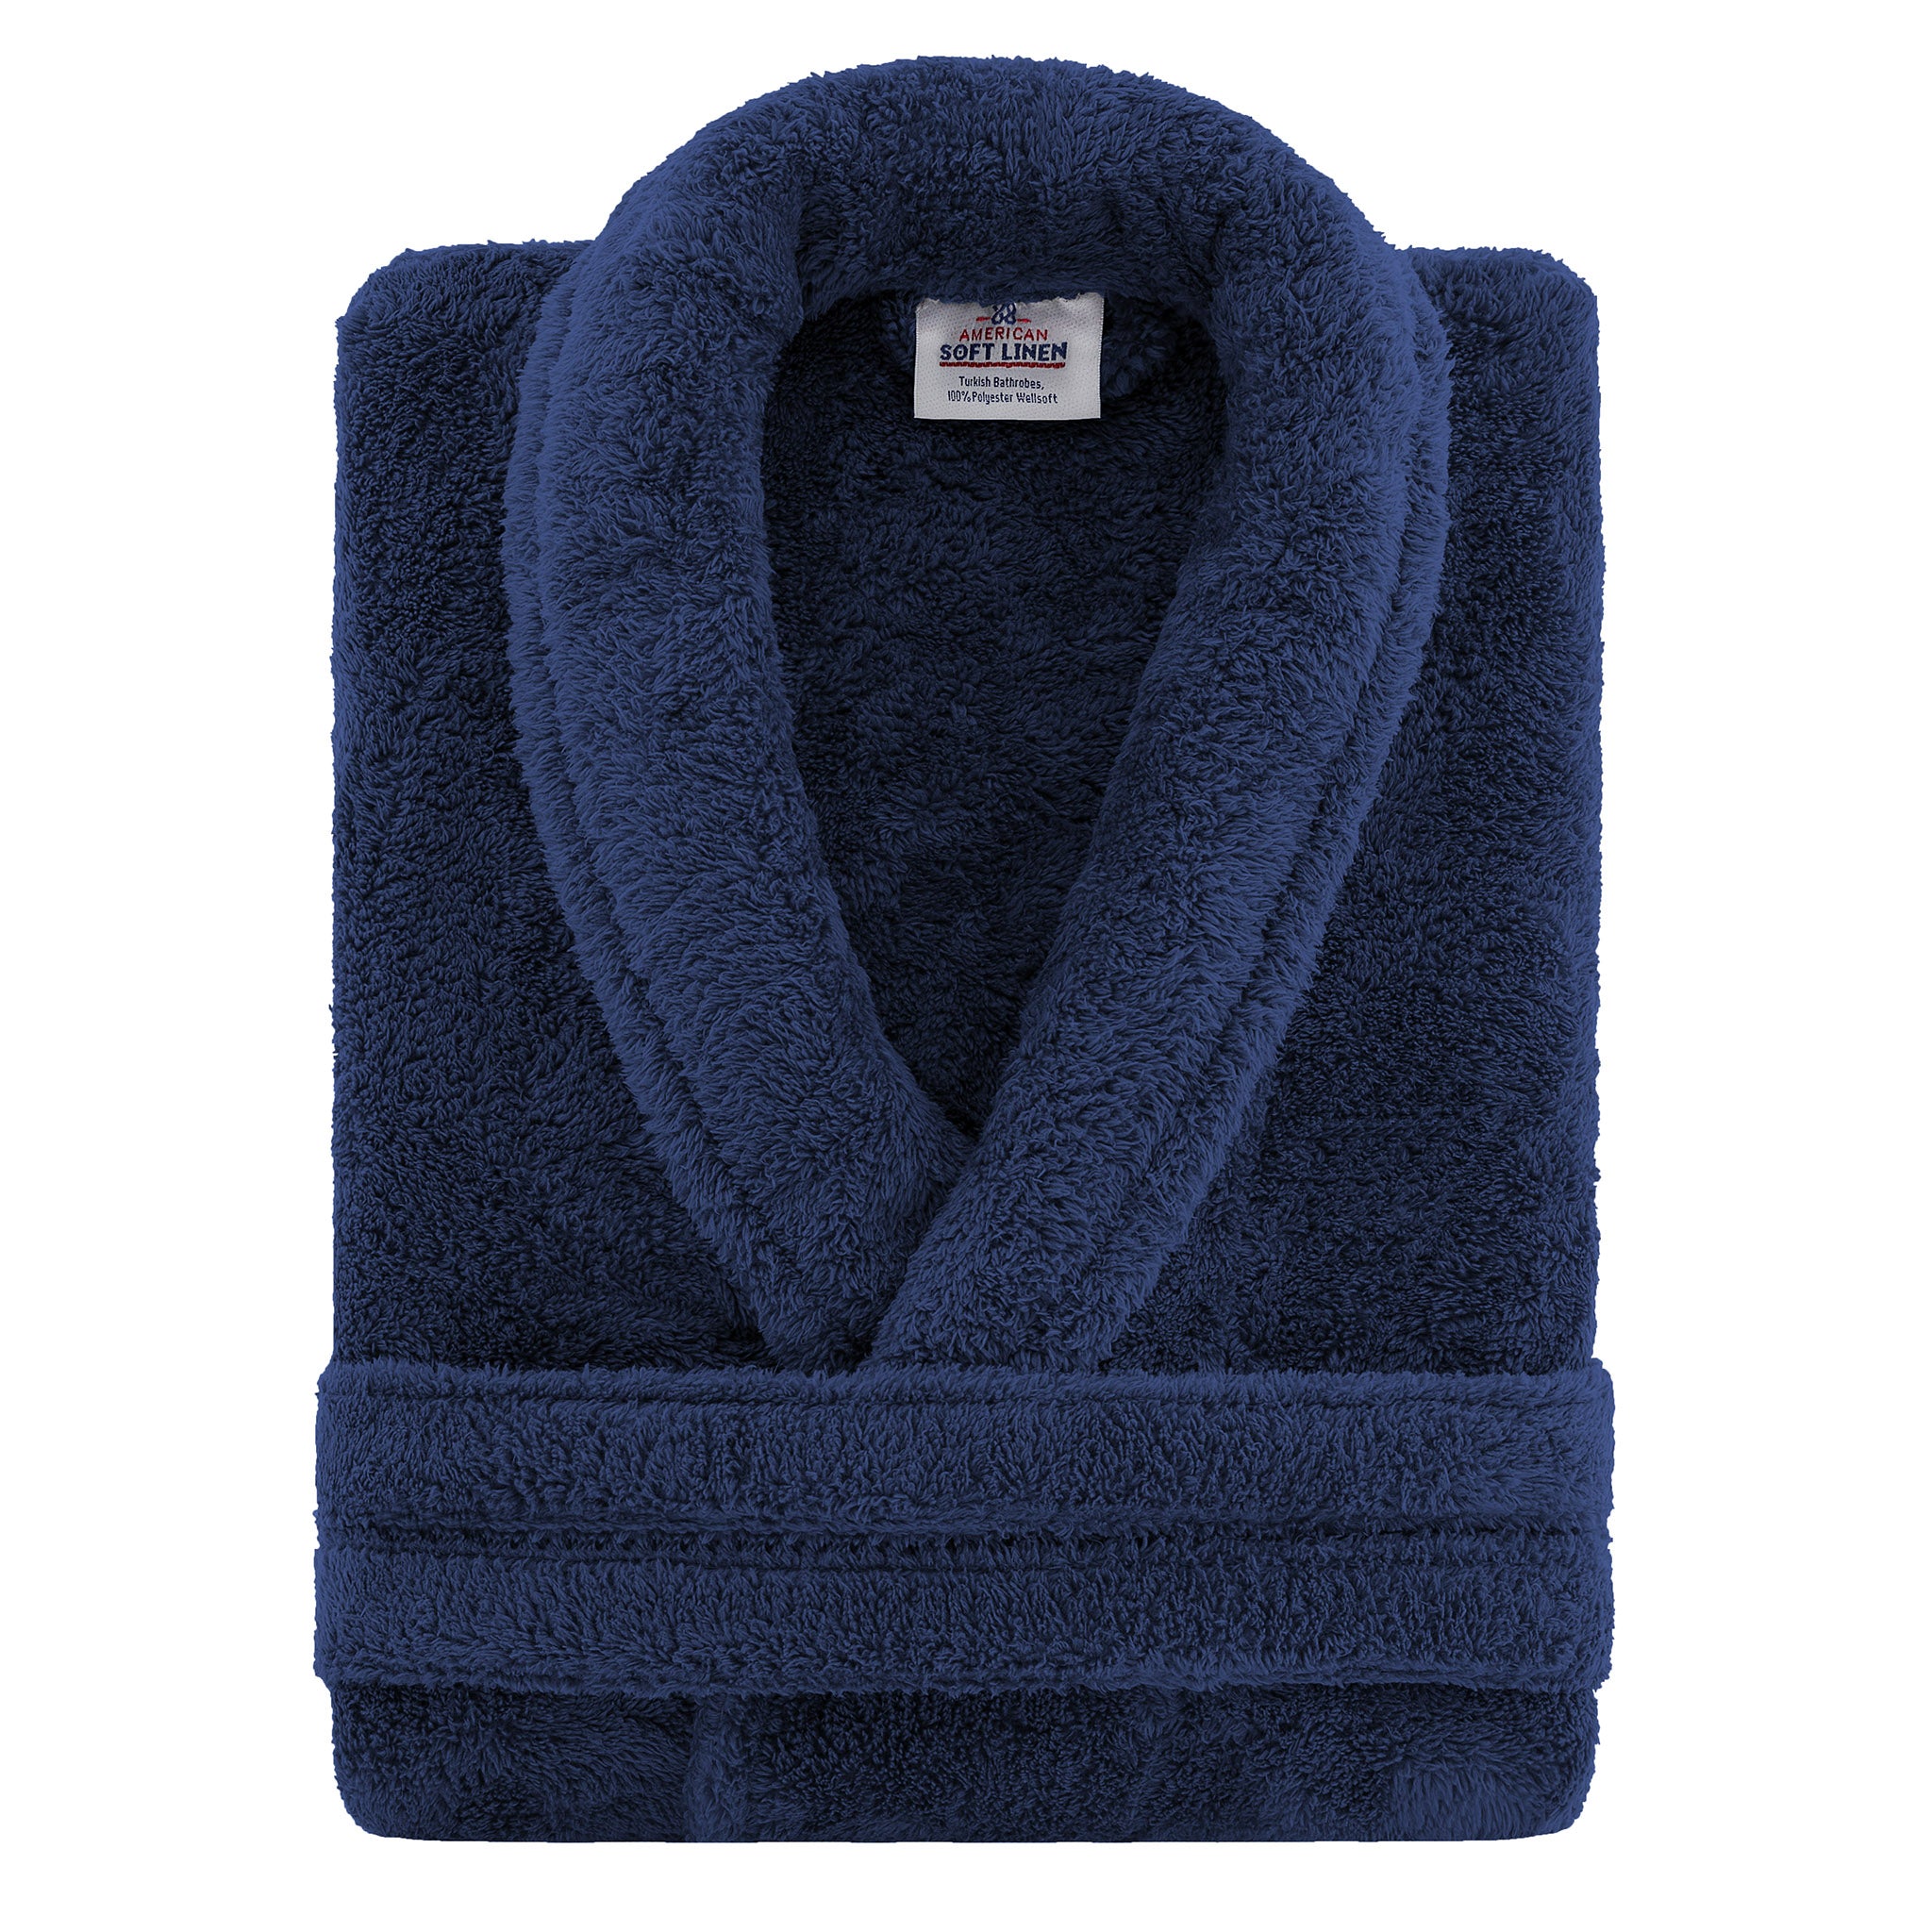 American Soft Linen Super Soft, Absorbent and Fluffy, Unisex Fleece Bathrobe XL-XXL-navy-blue-3